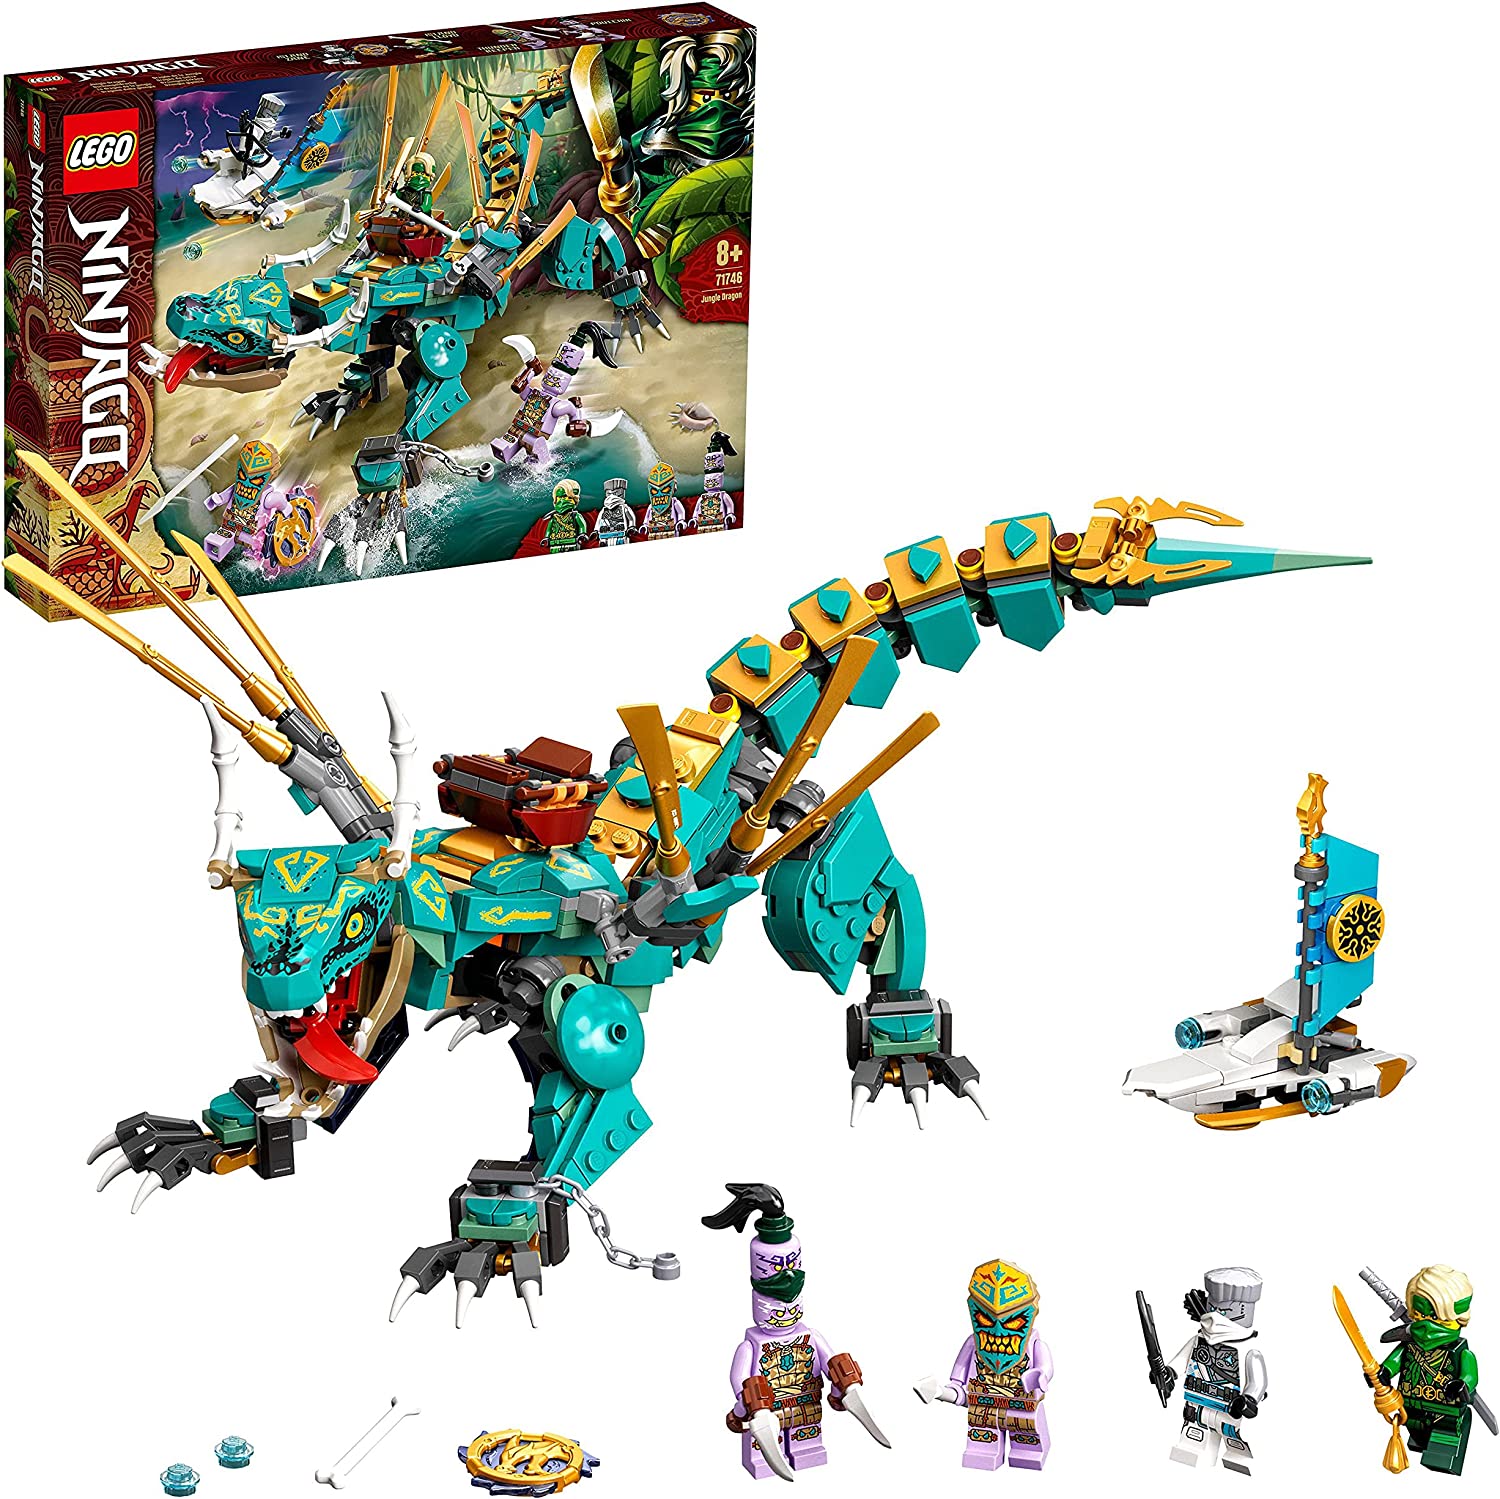 LEGO 71746 NINJAGO Jungle Dragon Building Set with Ninja Lloyd and Zane Mini Figures, Dragon Toy for Boys and Girls Aged 8+